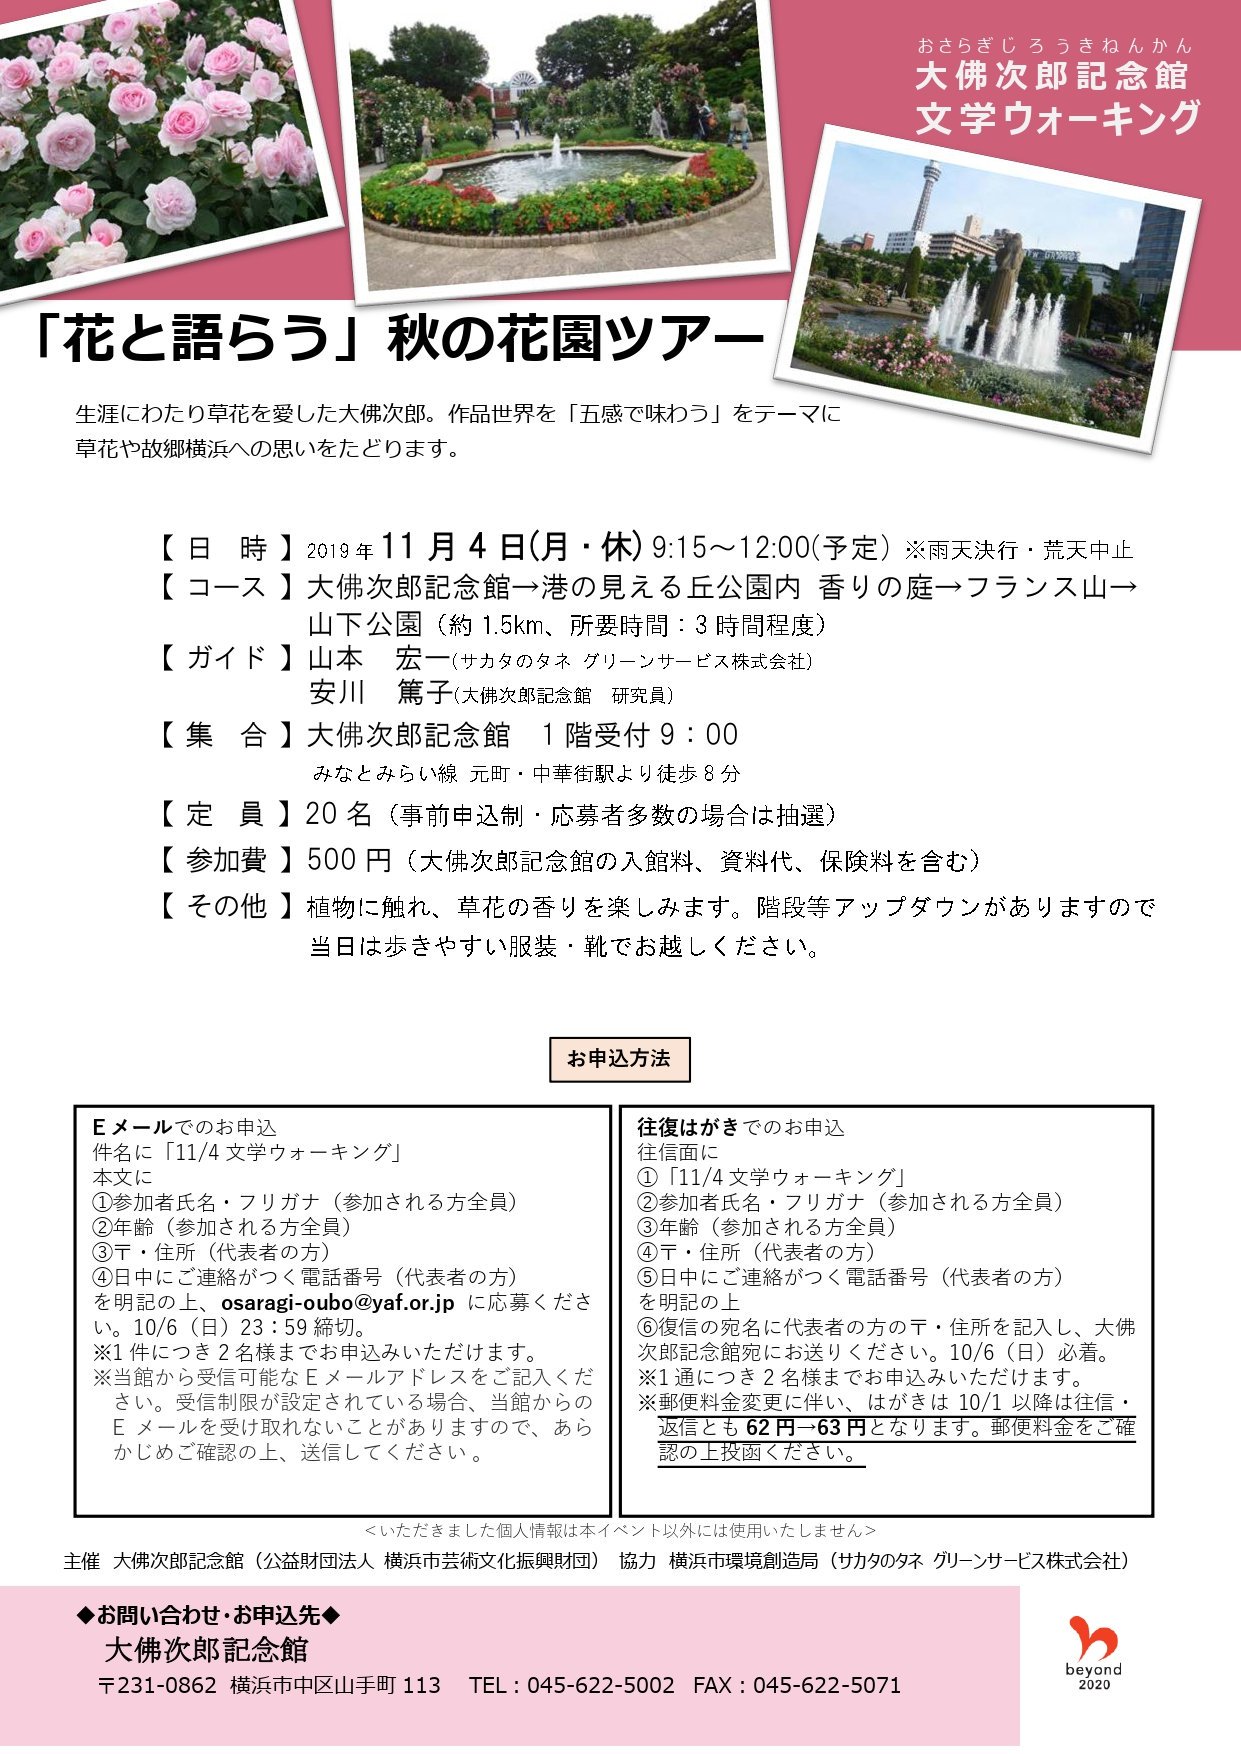 文学ウォーキング 花と語らう 秋の花園ツアー 公式 横浜市観光情報サイト Yokohama Official Visitors Guide